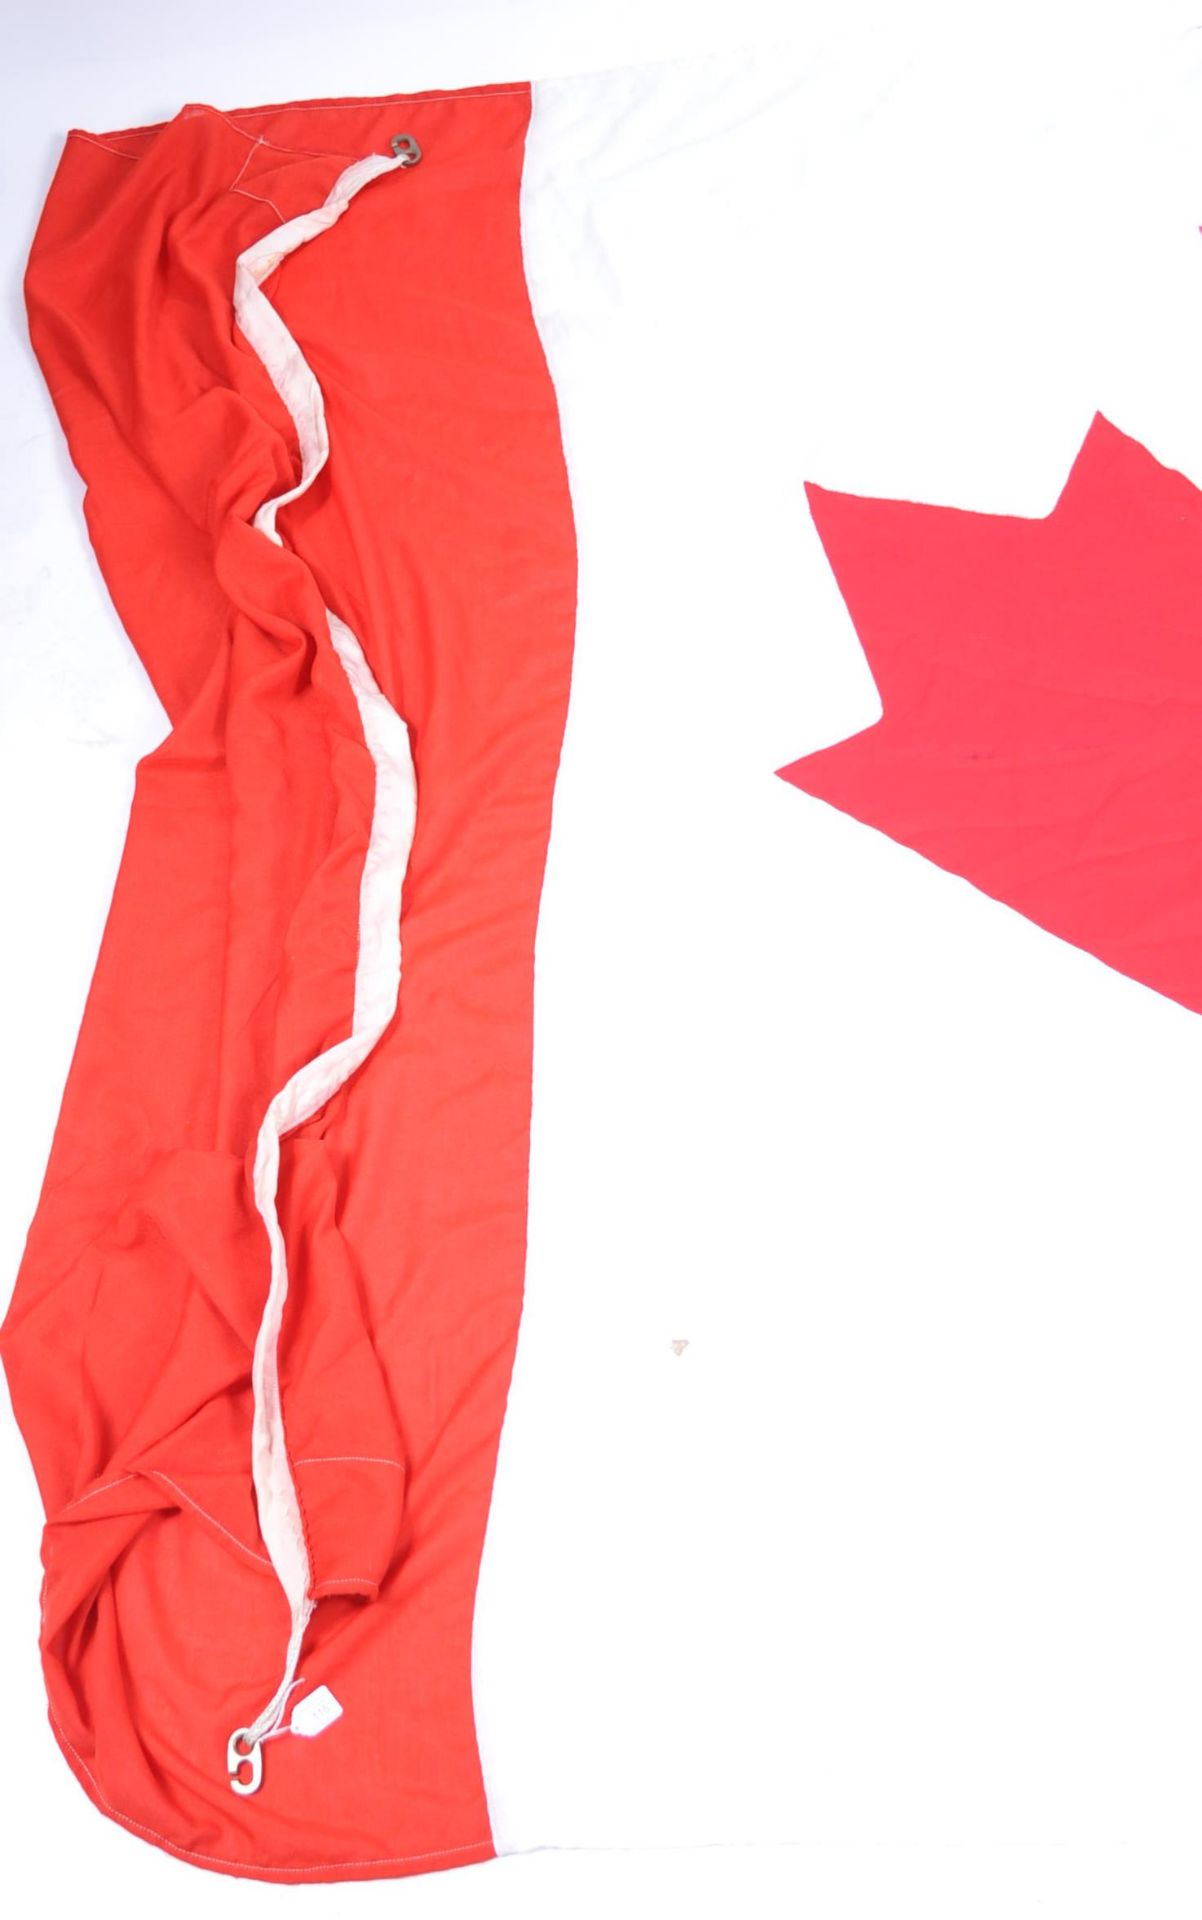 LARGE AND IMPRESSIVE VINTAGE CANADIAN NATIONAL FLAG - Bild 4 aus 5